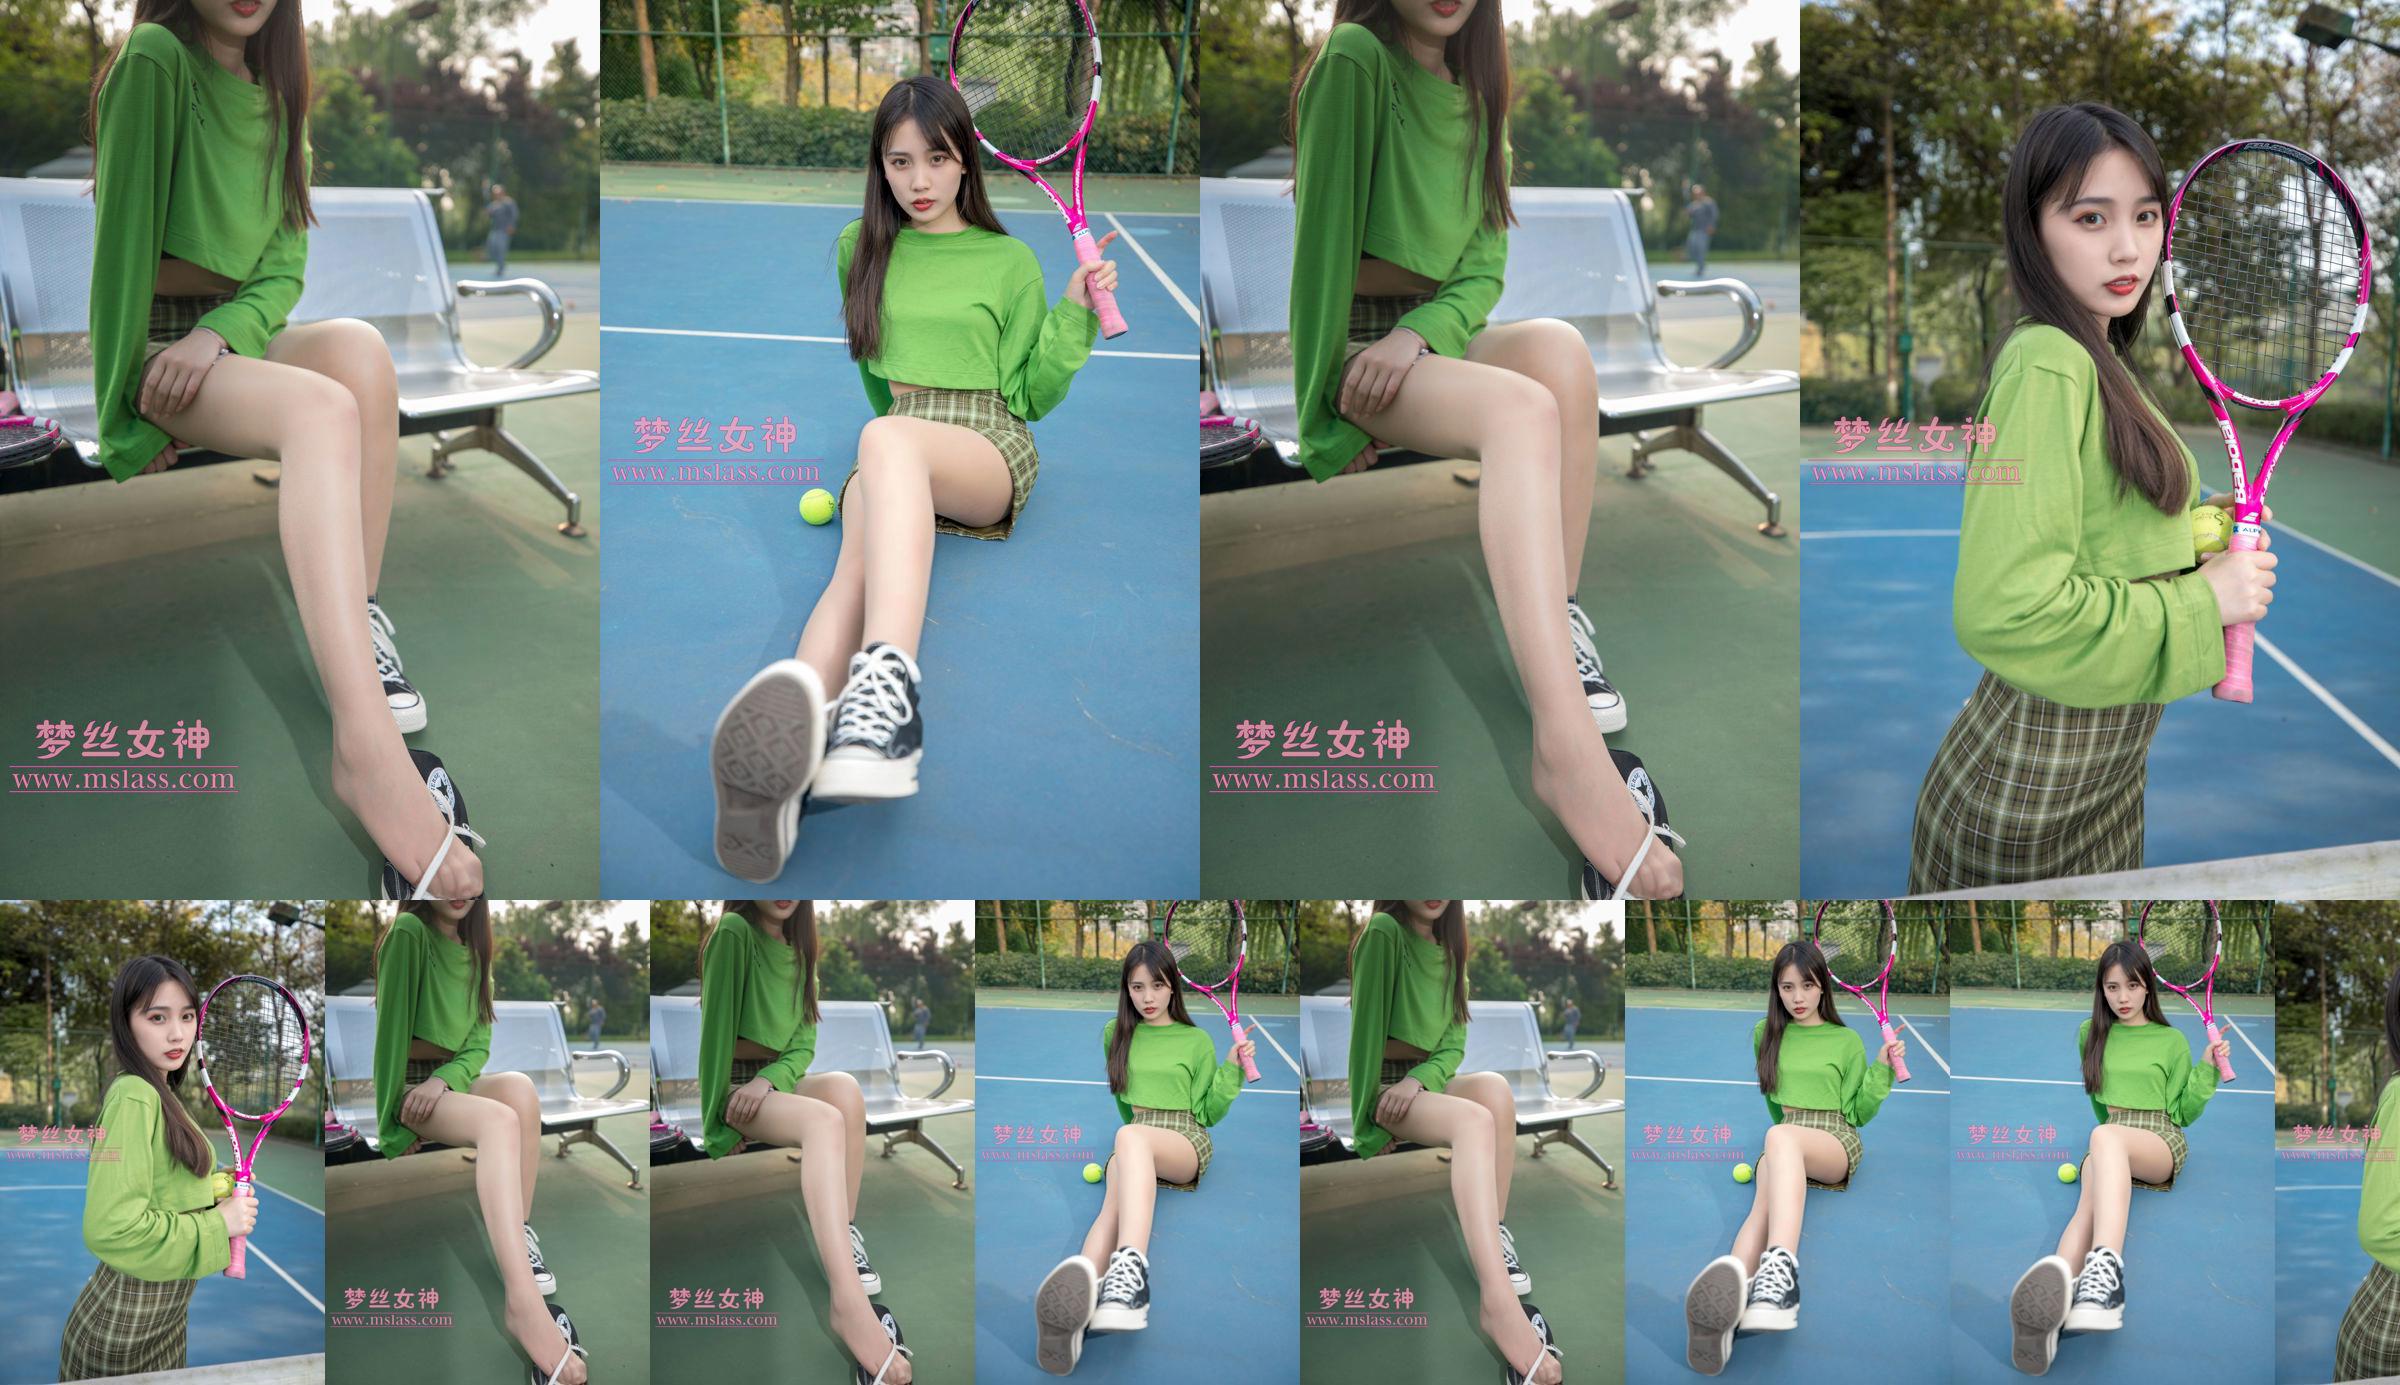 [เทพธิดาแห่งความฝัน MSLASS] Xiang Xuan Tennis Girl No.2c33e9 หน้า 1